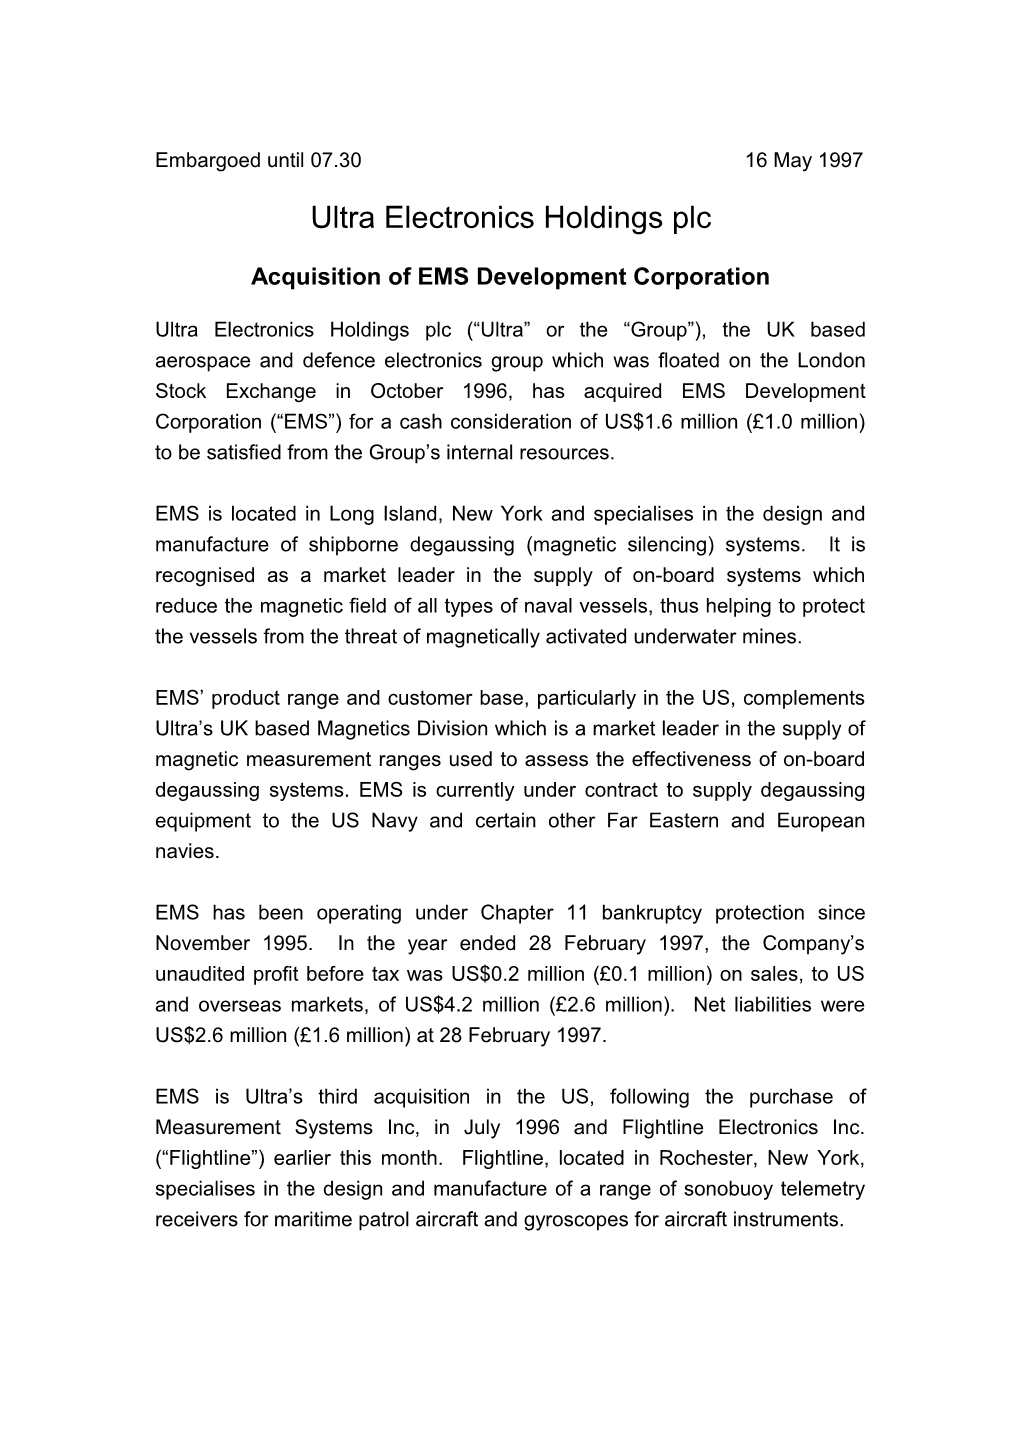 Acquisition of EMS Development Corporation